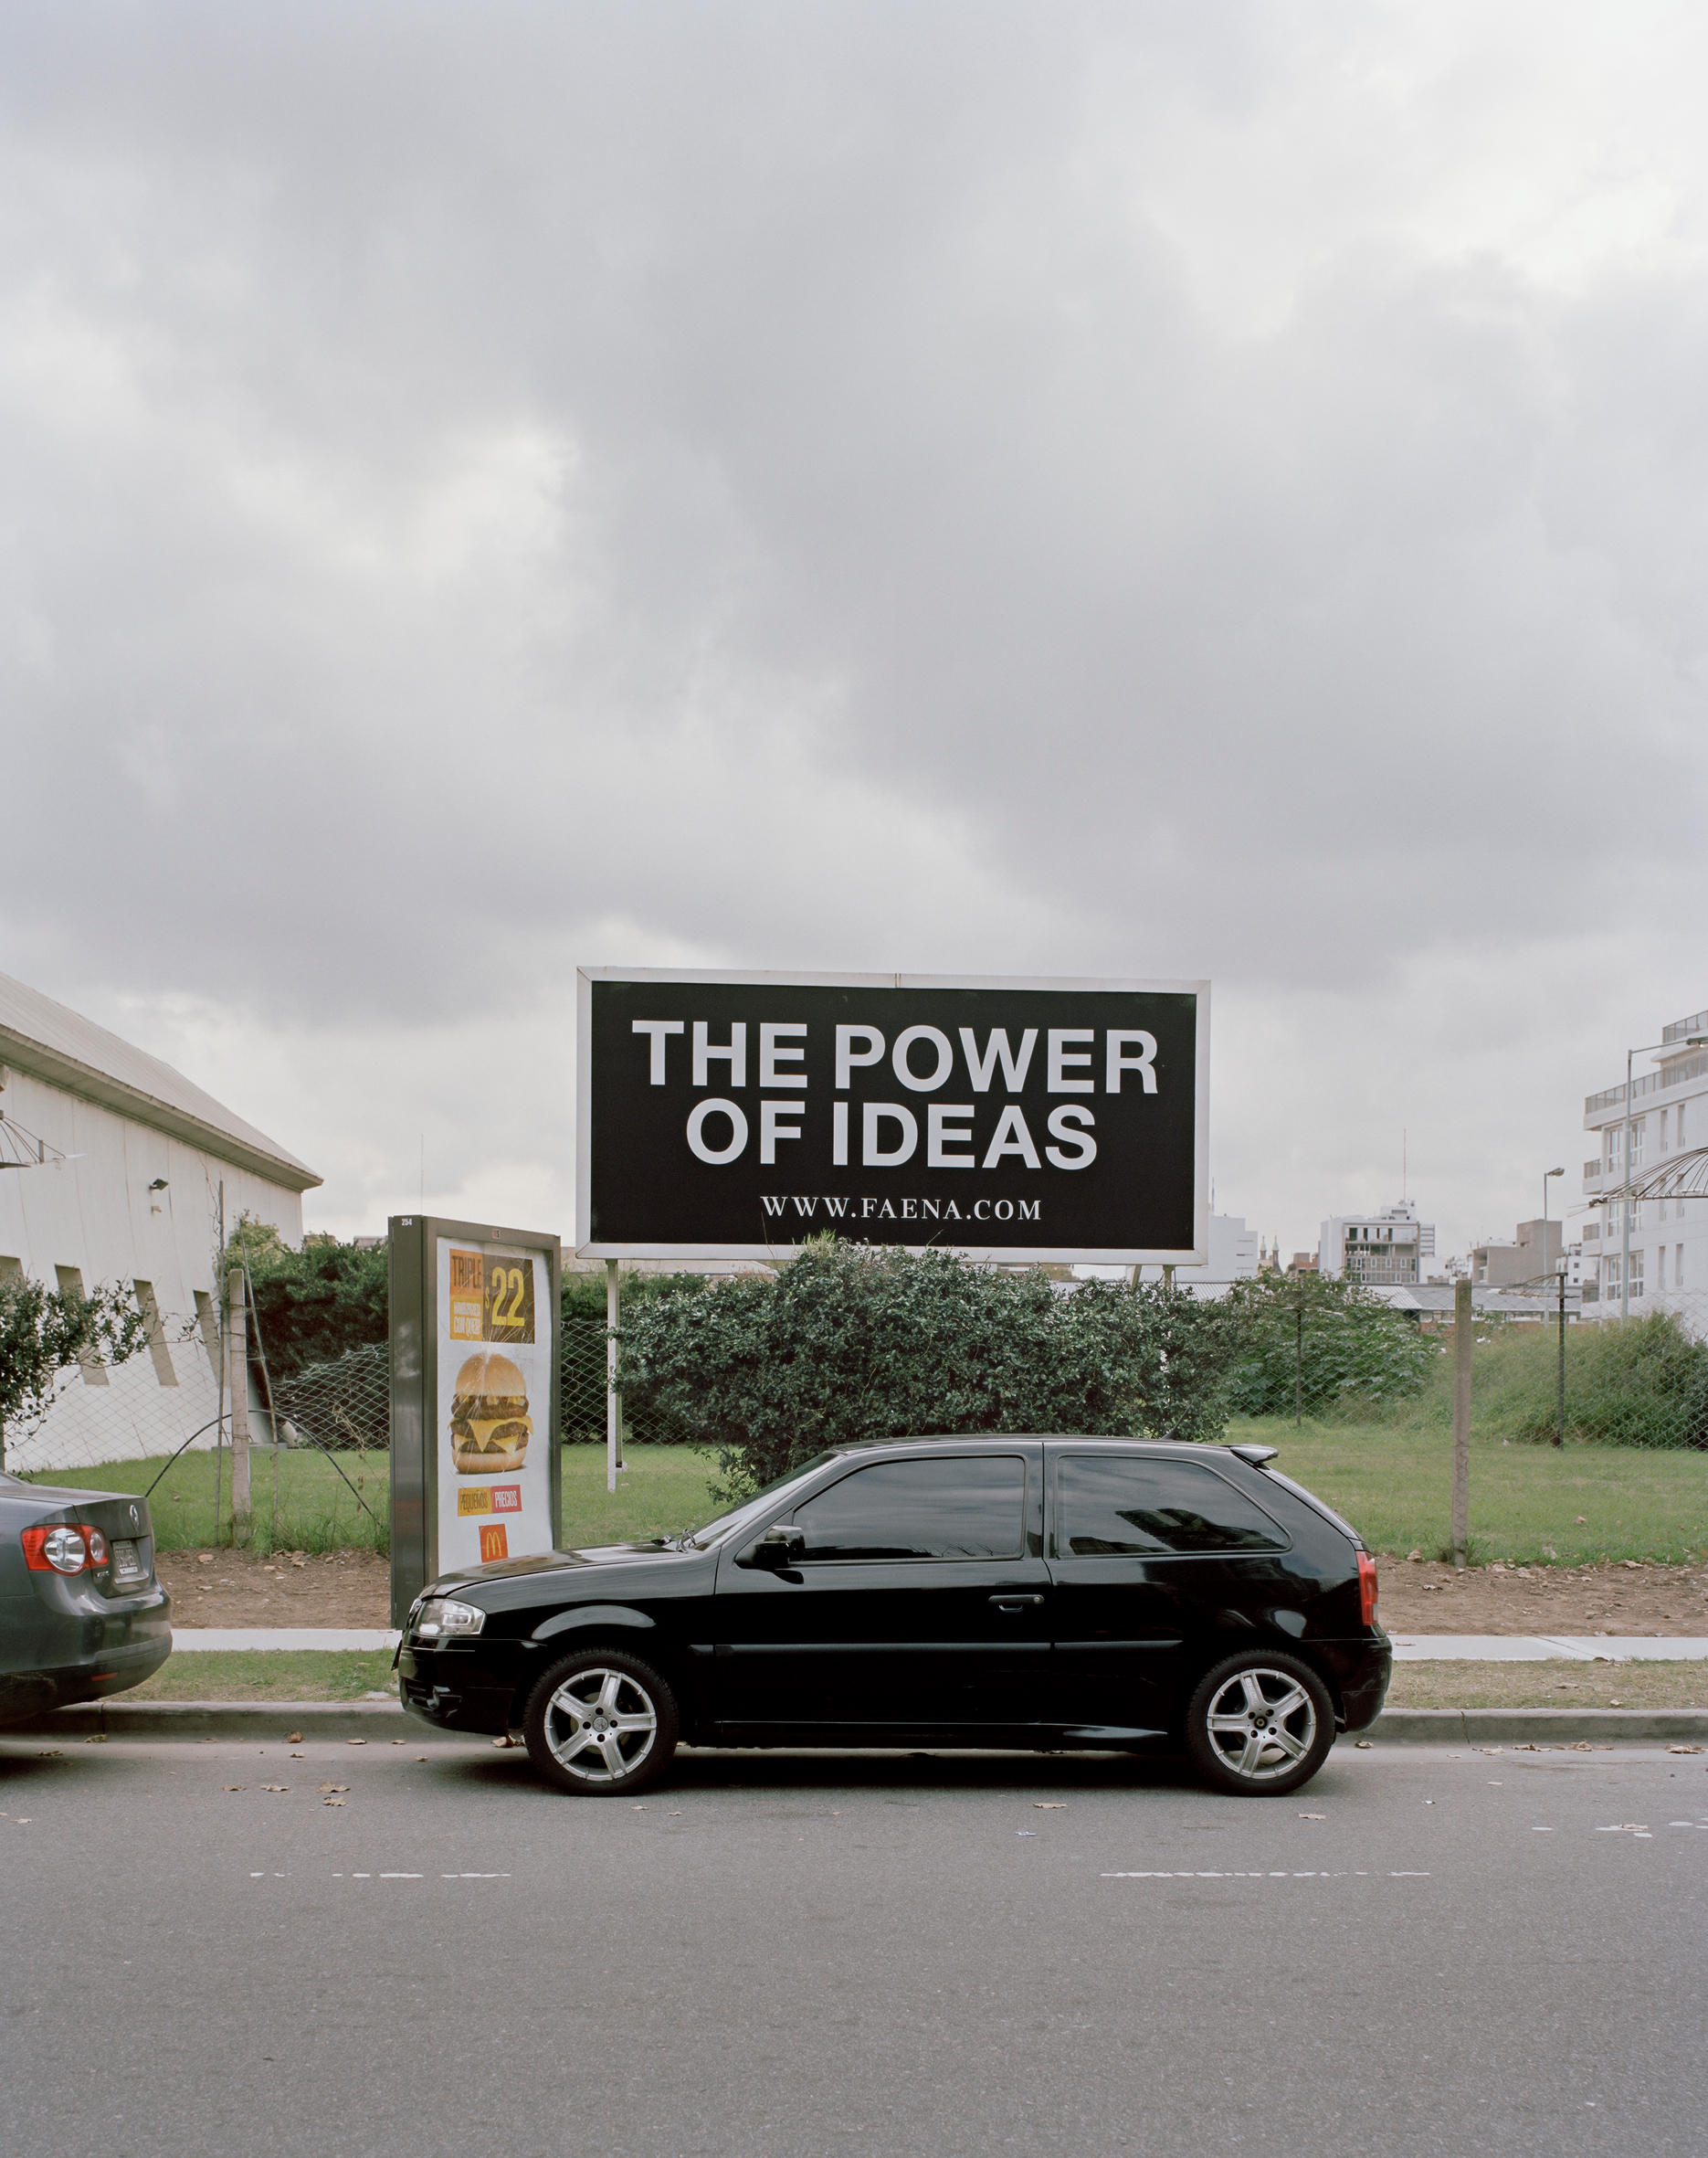 Foto de um pequeno carro preto, parado de frente a um outdoor onde se lê: O poder das ideias